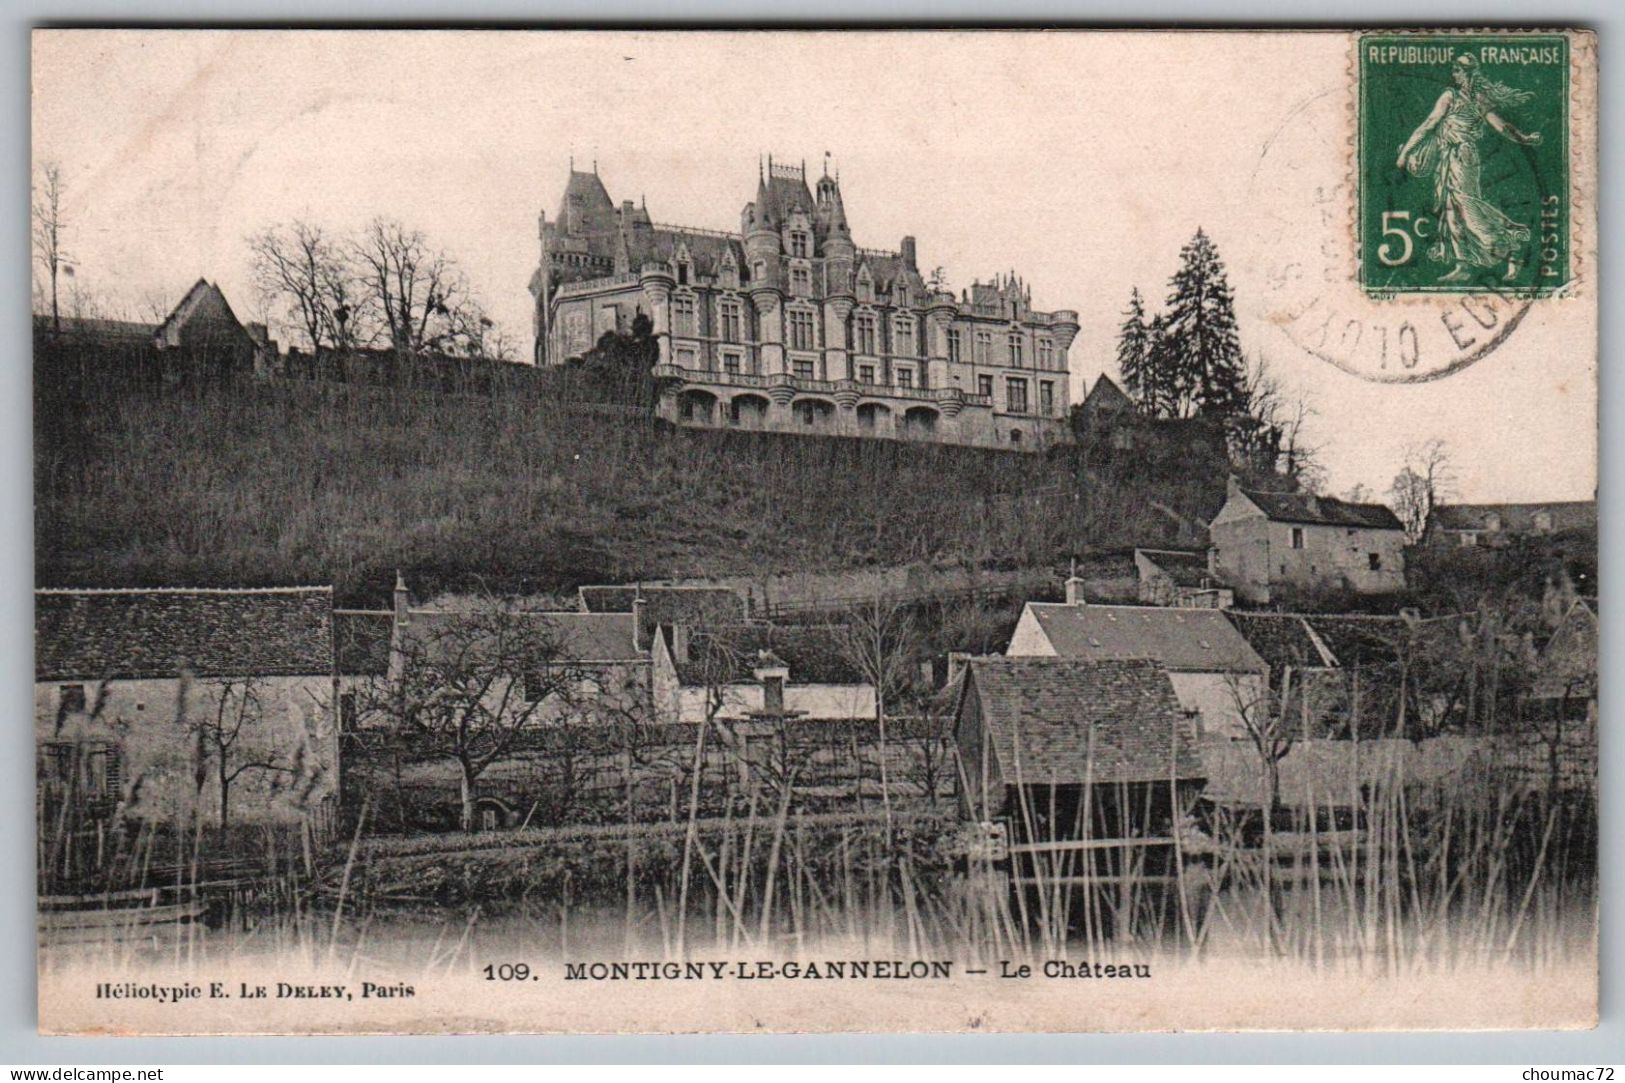 (28) 2079, Montigny Le Gannelon, E Le Deley 109, Le Château, Lavoir - Montigny-le-Gannelon